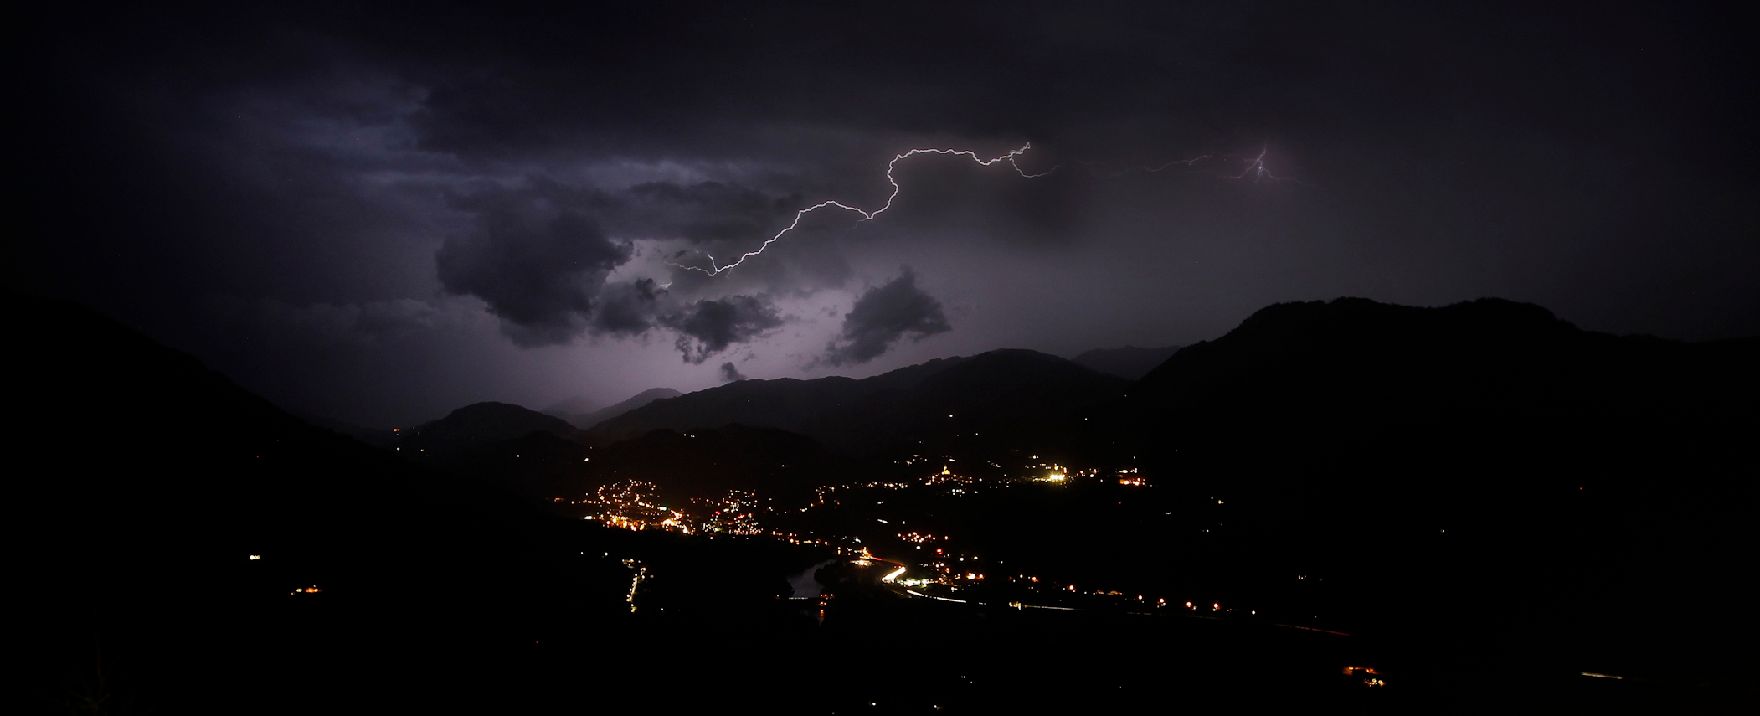 Ein Gewitter über Sankt Johann im Pongau. Schlagworte: Berge, Blitz, Himmel, Landschaft, Nacht, Natur, Schlechtwetter, Tal, Unwetter, Wolken